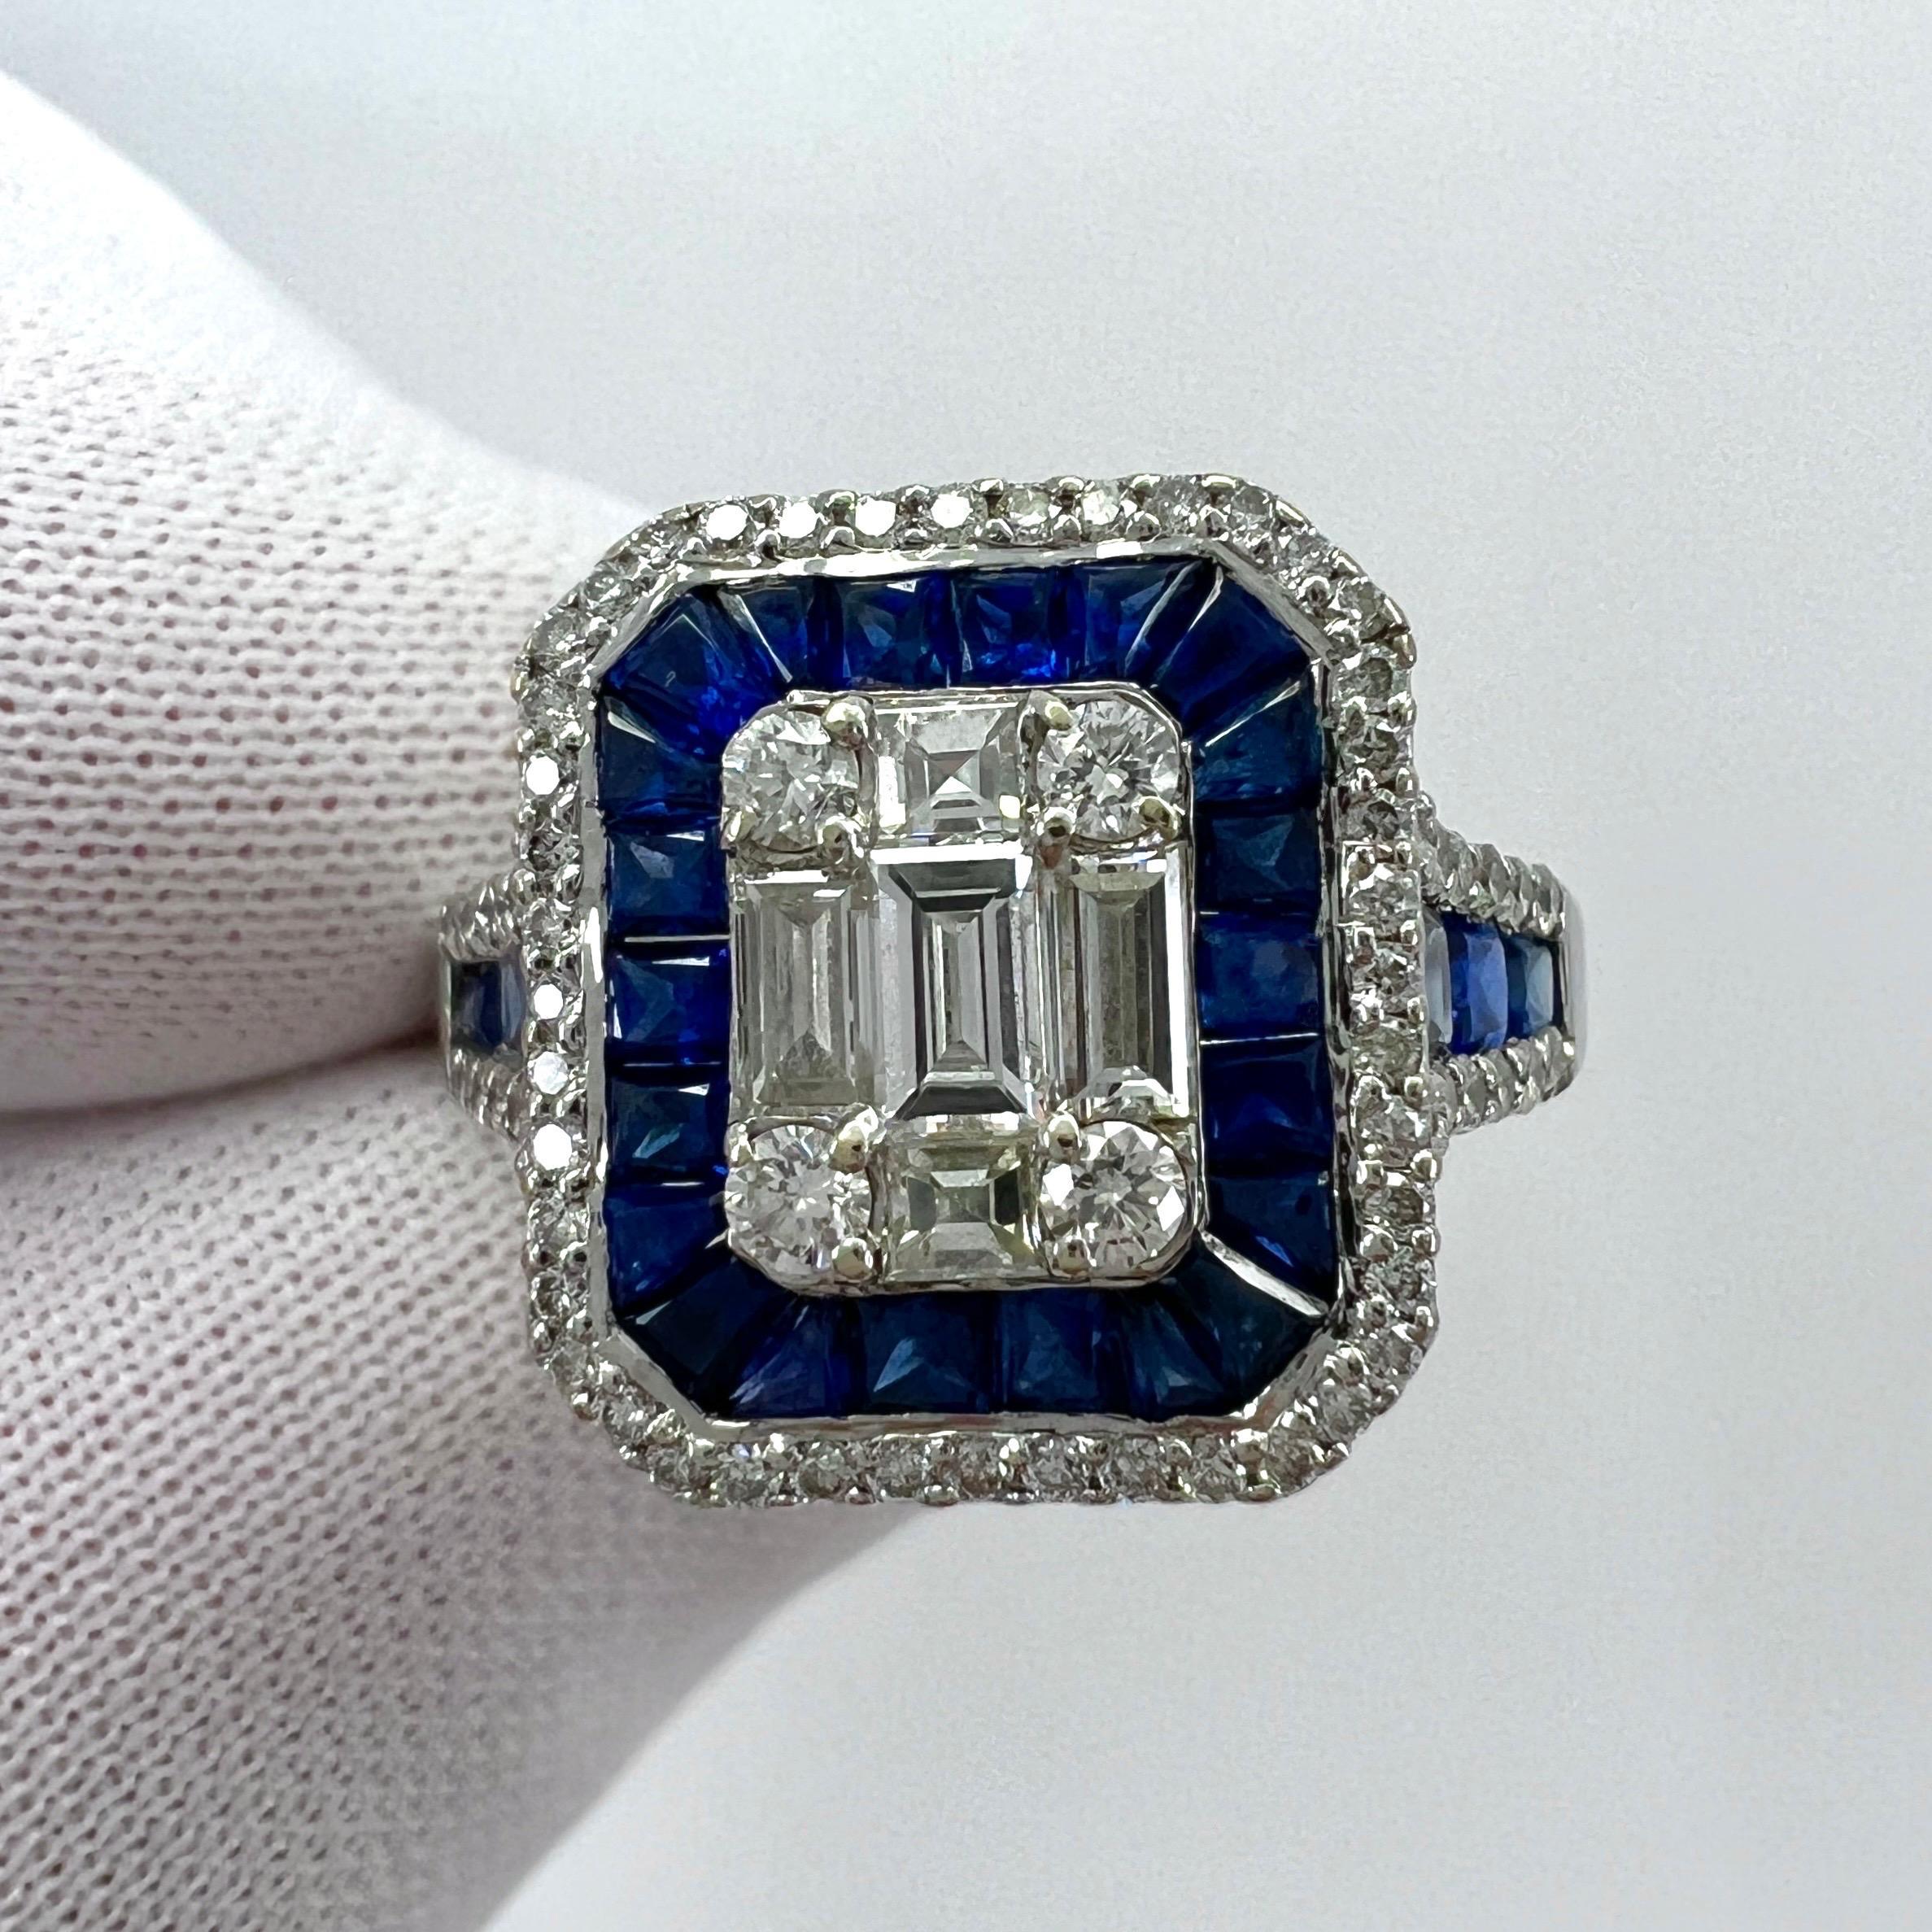 2 Carat Blue Sapphire Diamond Calibre Cut 18k White Gold Art Deco Cocktail Ring For Sale 3